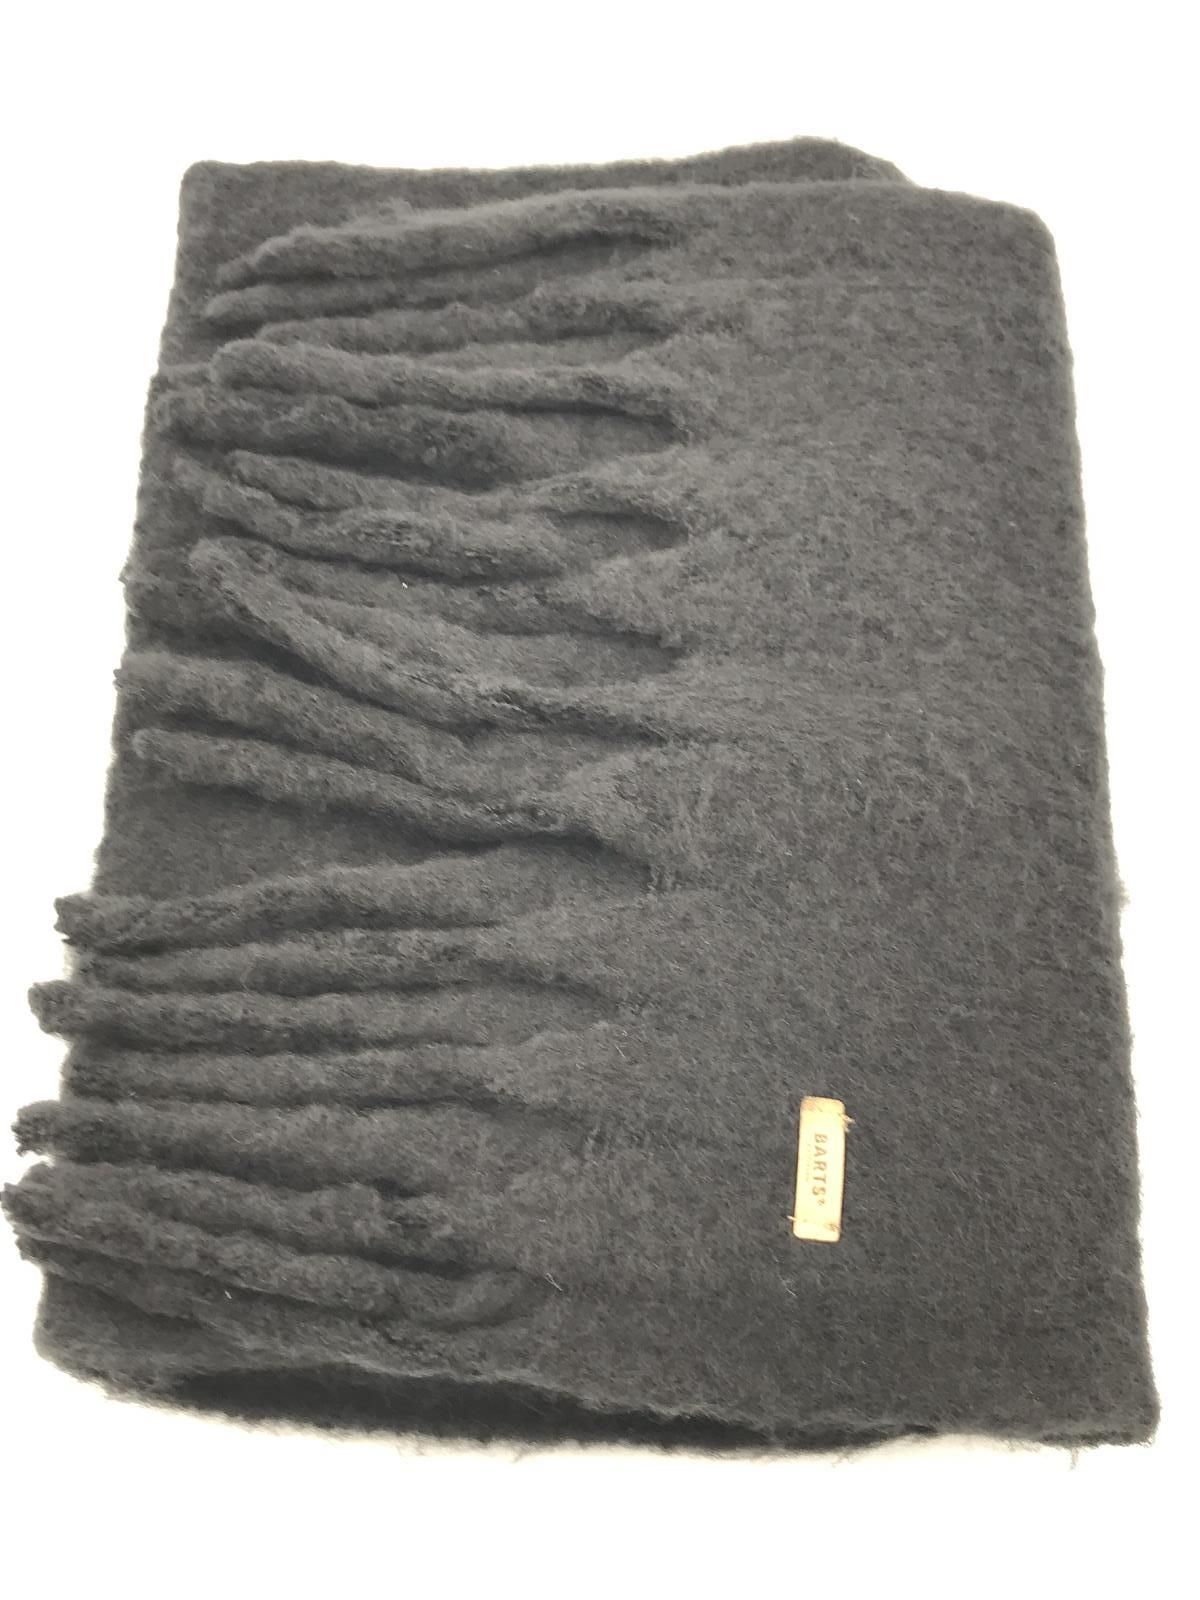 Barts Fyone scarf black (5813) - Stiletto Schoenen (Oudenaarde)